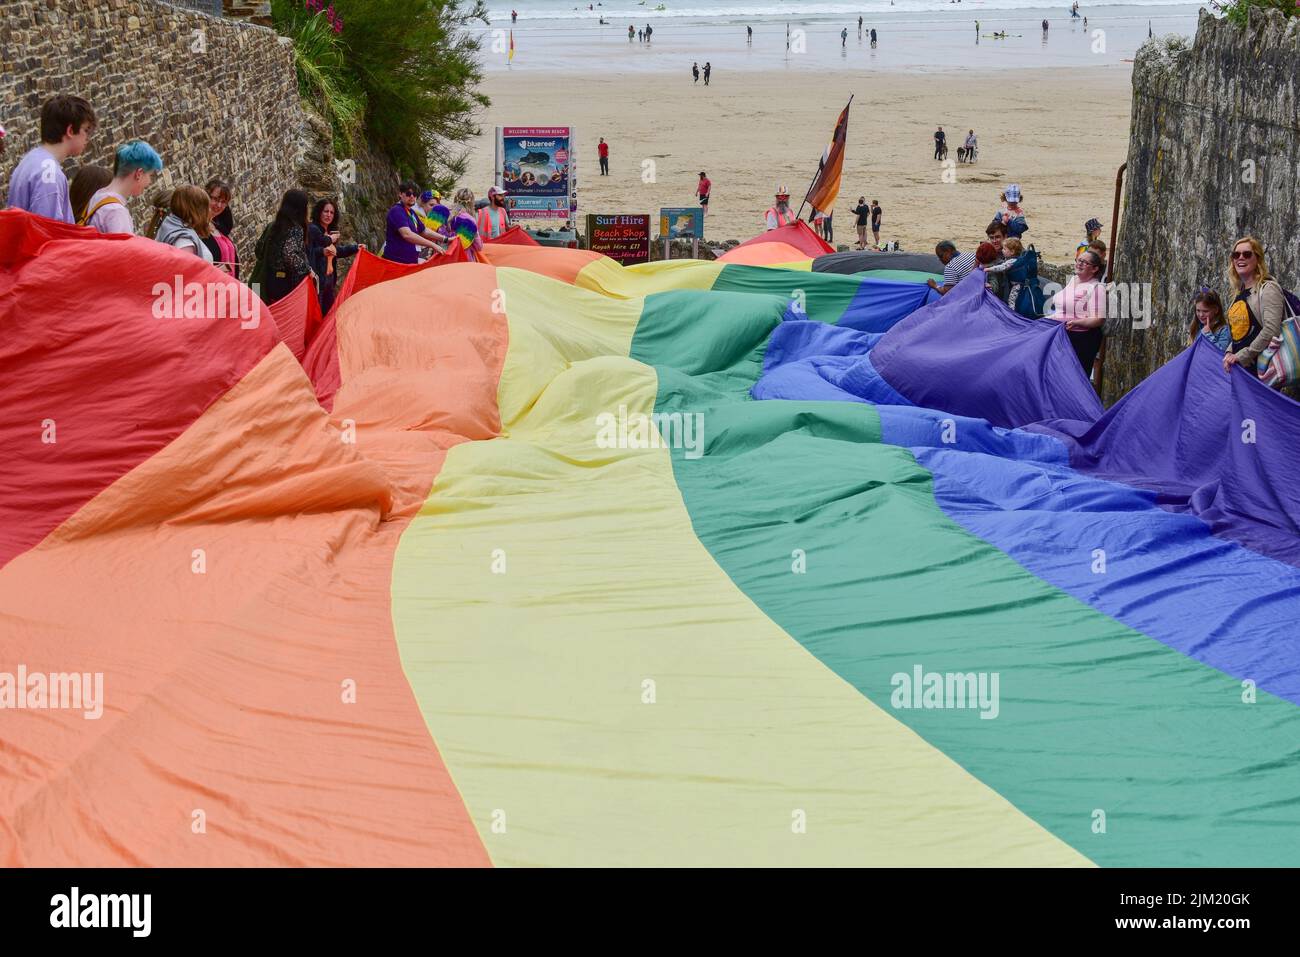 El enorme y colorido estandarte de la bandera de Cornwall Pride se enorgullece, que ostentan los participantes en el desfile en Towan Beach Newquay, en el Reino Unido. Foto de stock